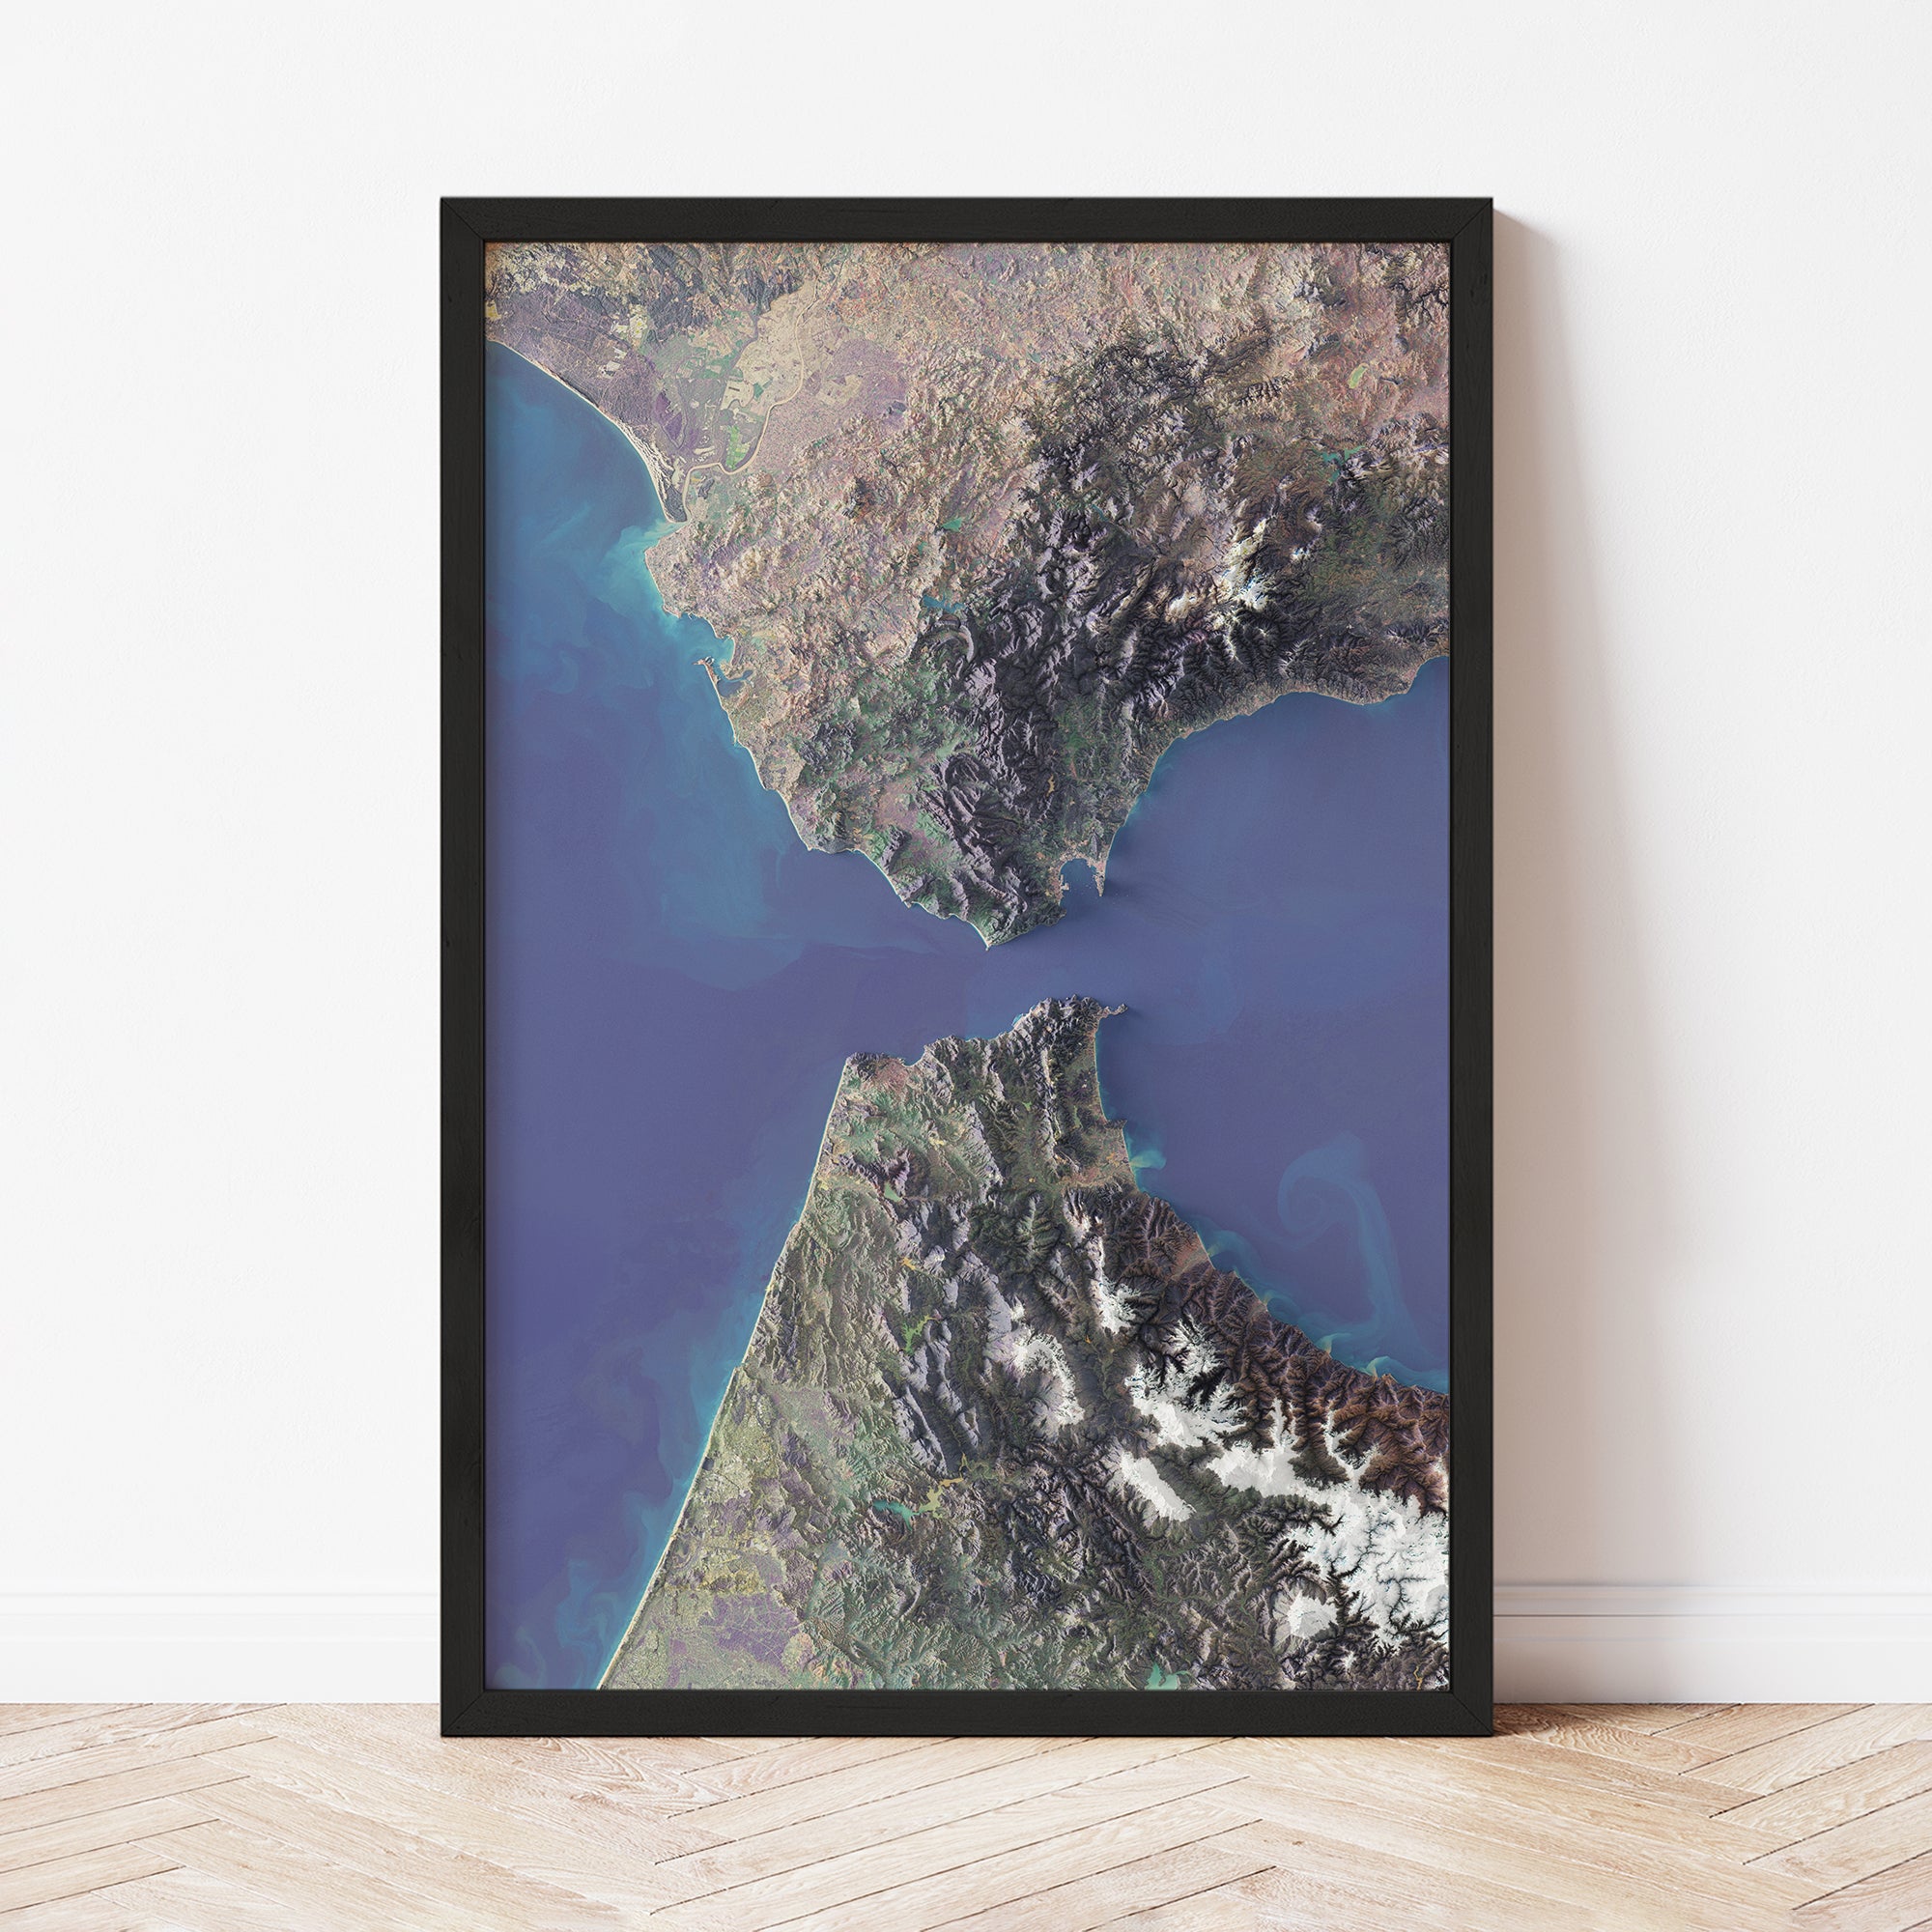 Strait of Gibraltar - Satellite Imagery